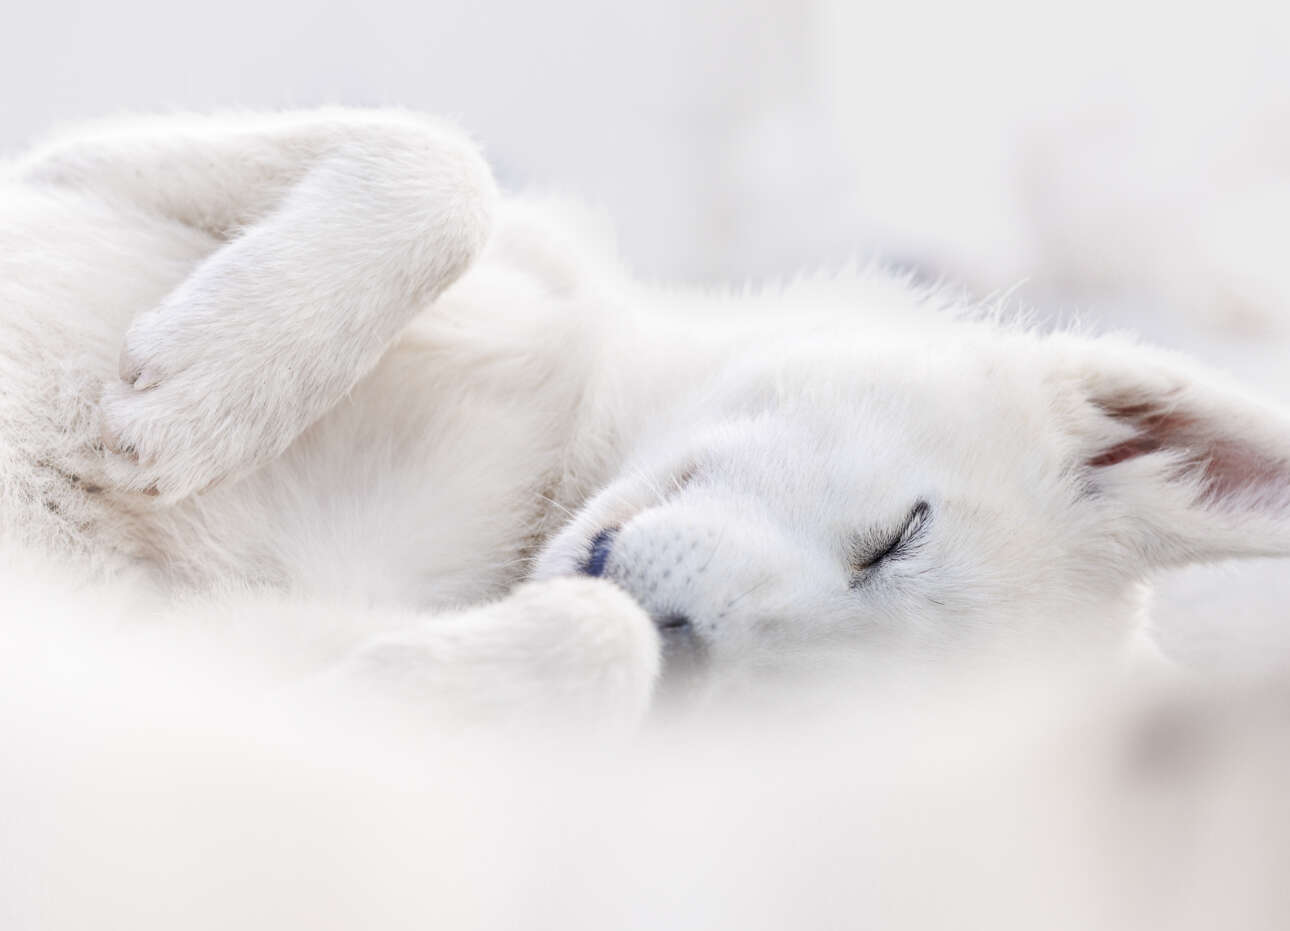 Μια εικόνα ενός σκύλου έλκηθρου στης Γροιλανδία, ήρθε τρίτη στην κατηγορία «Πορτραίτο & Φύση»